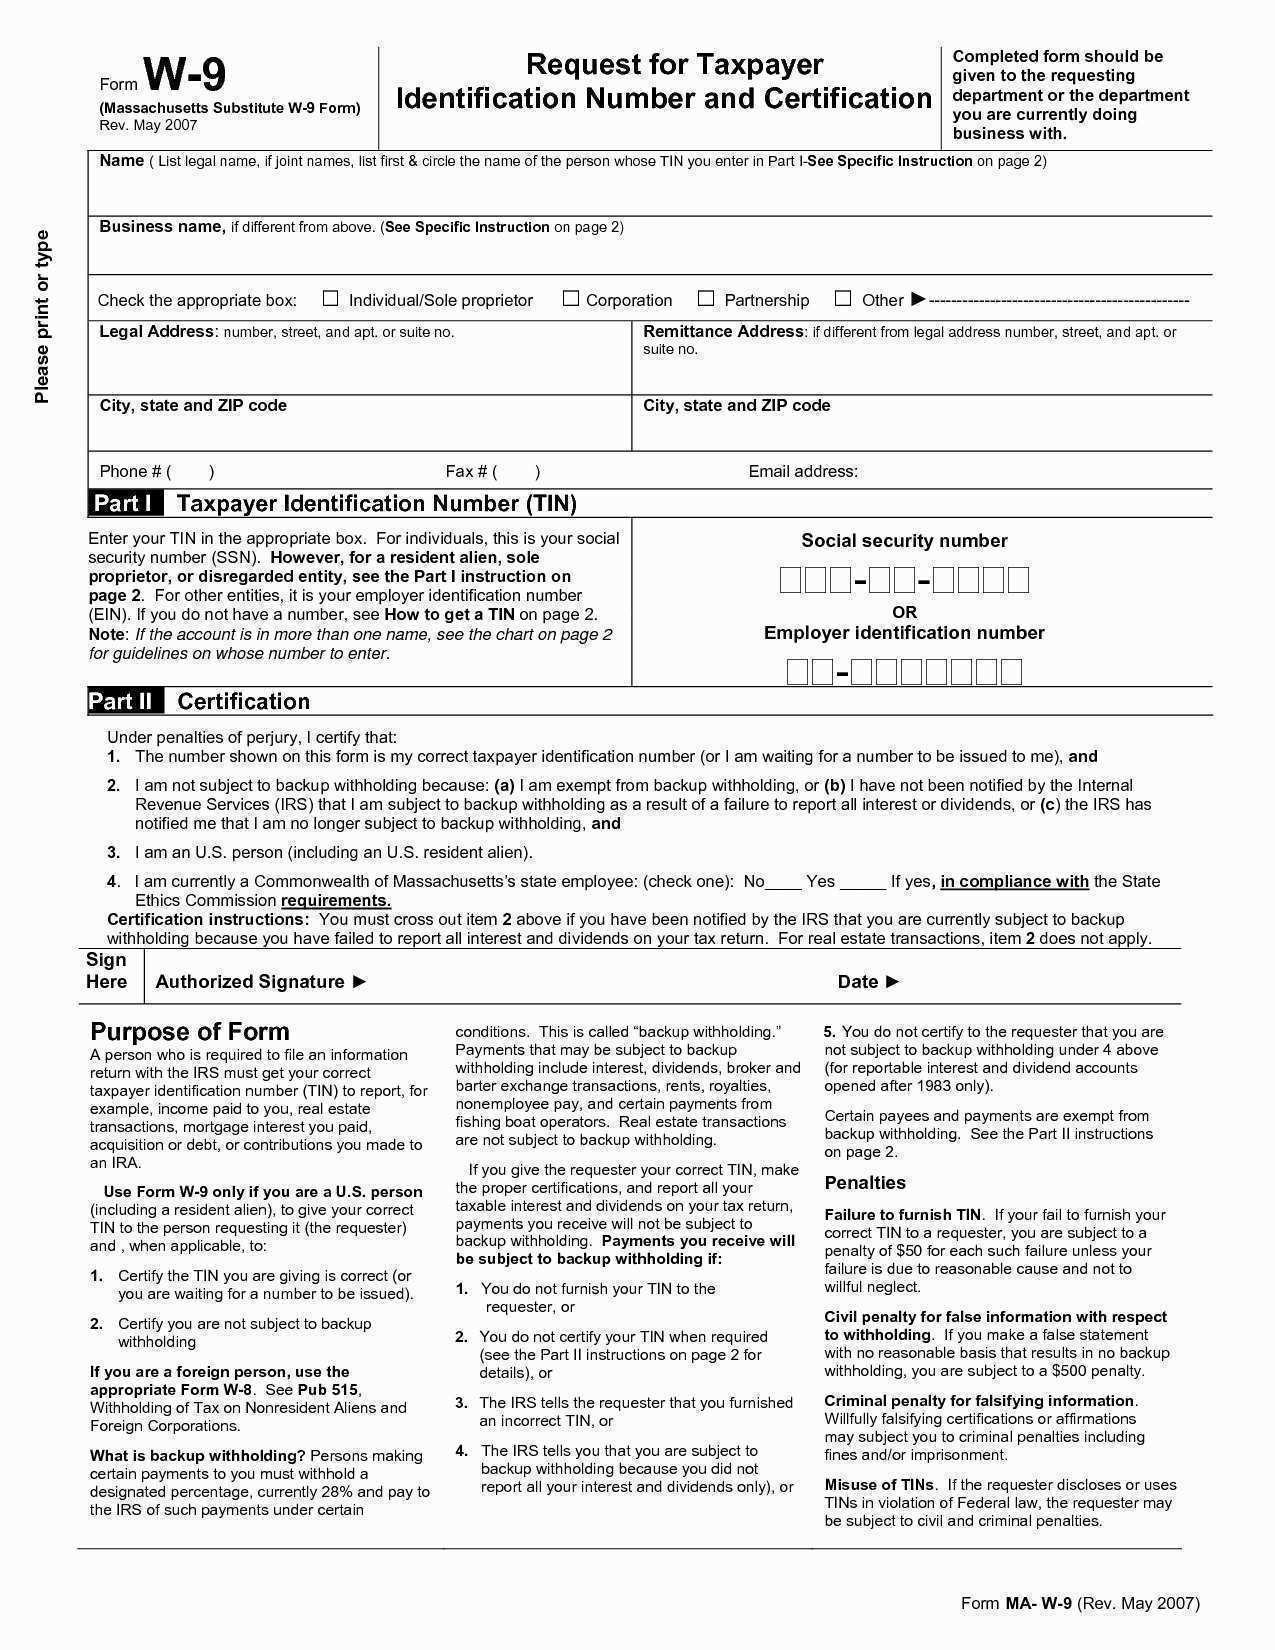 Blank W9 Form Business Templates W 9 Colorado Printable In Printable - W9 Free Printable Form 2016